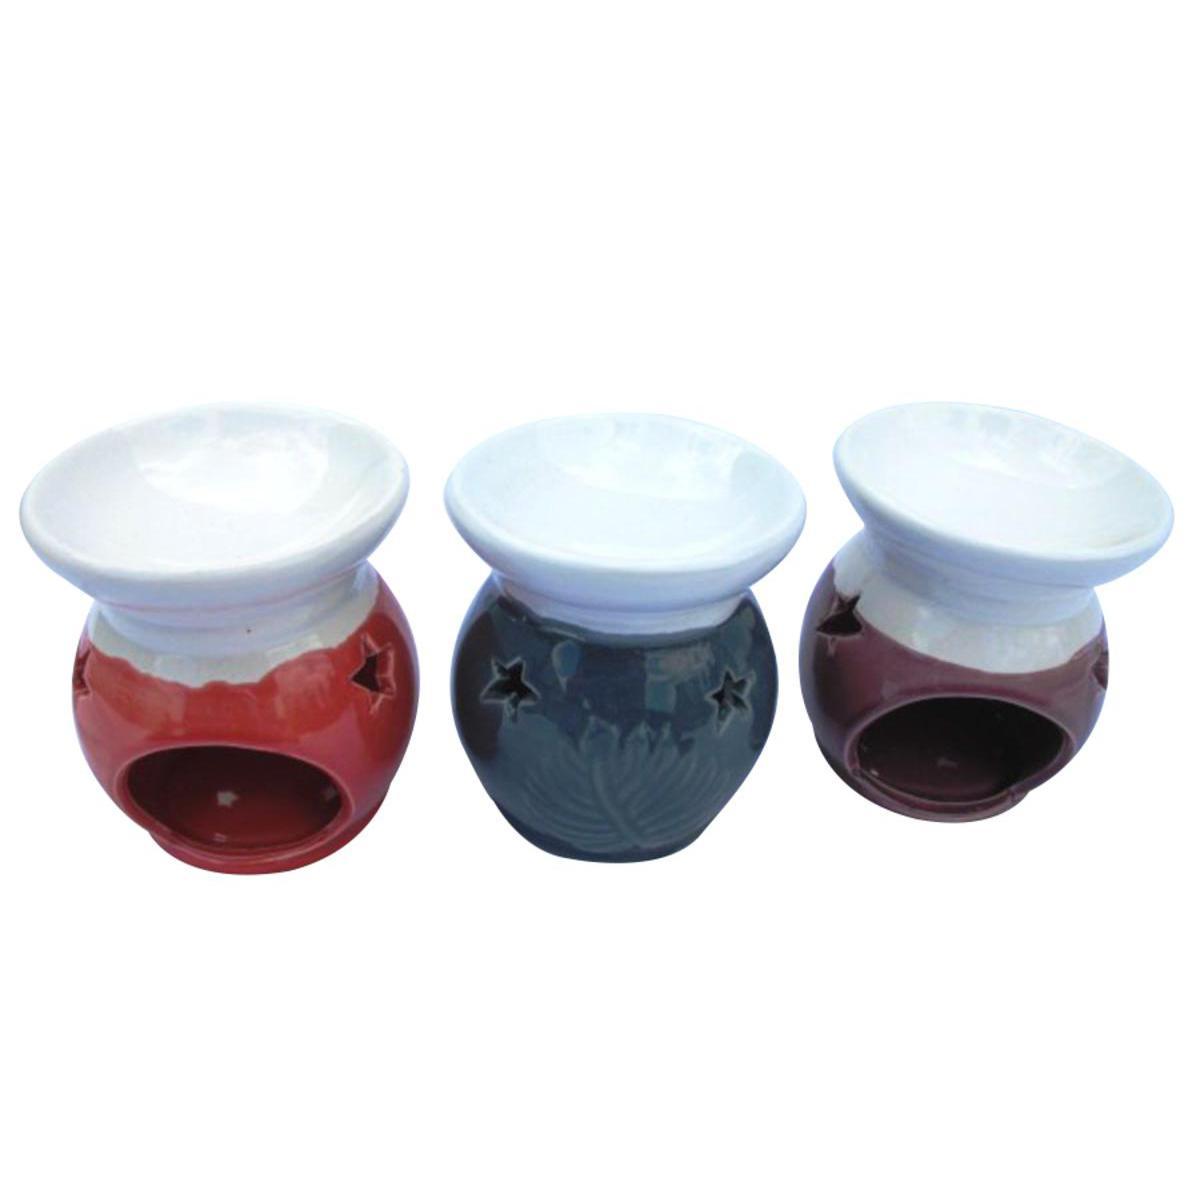 Brûle parfum - Céramique - D 9 x H 10 cm - Noir, gris, blanc ou rouge